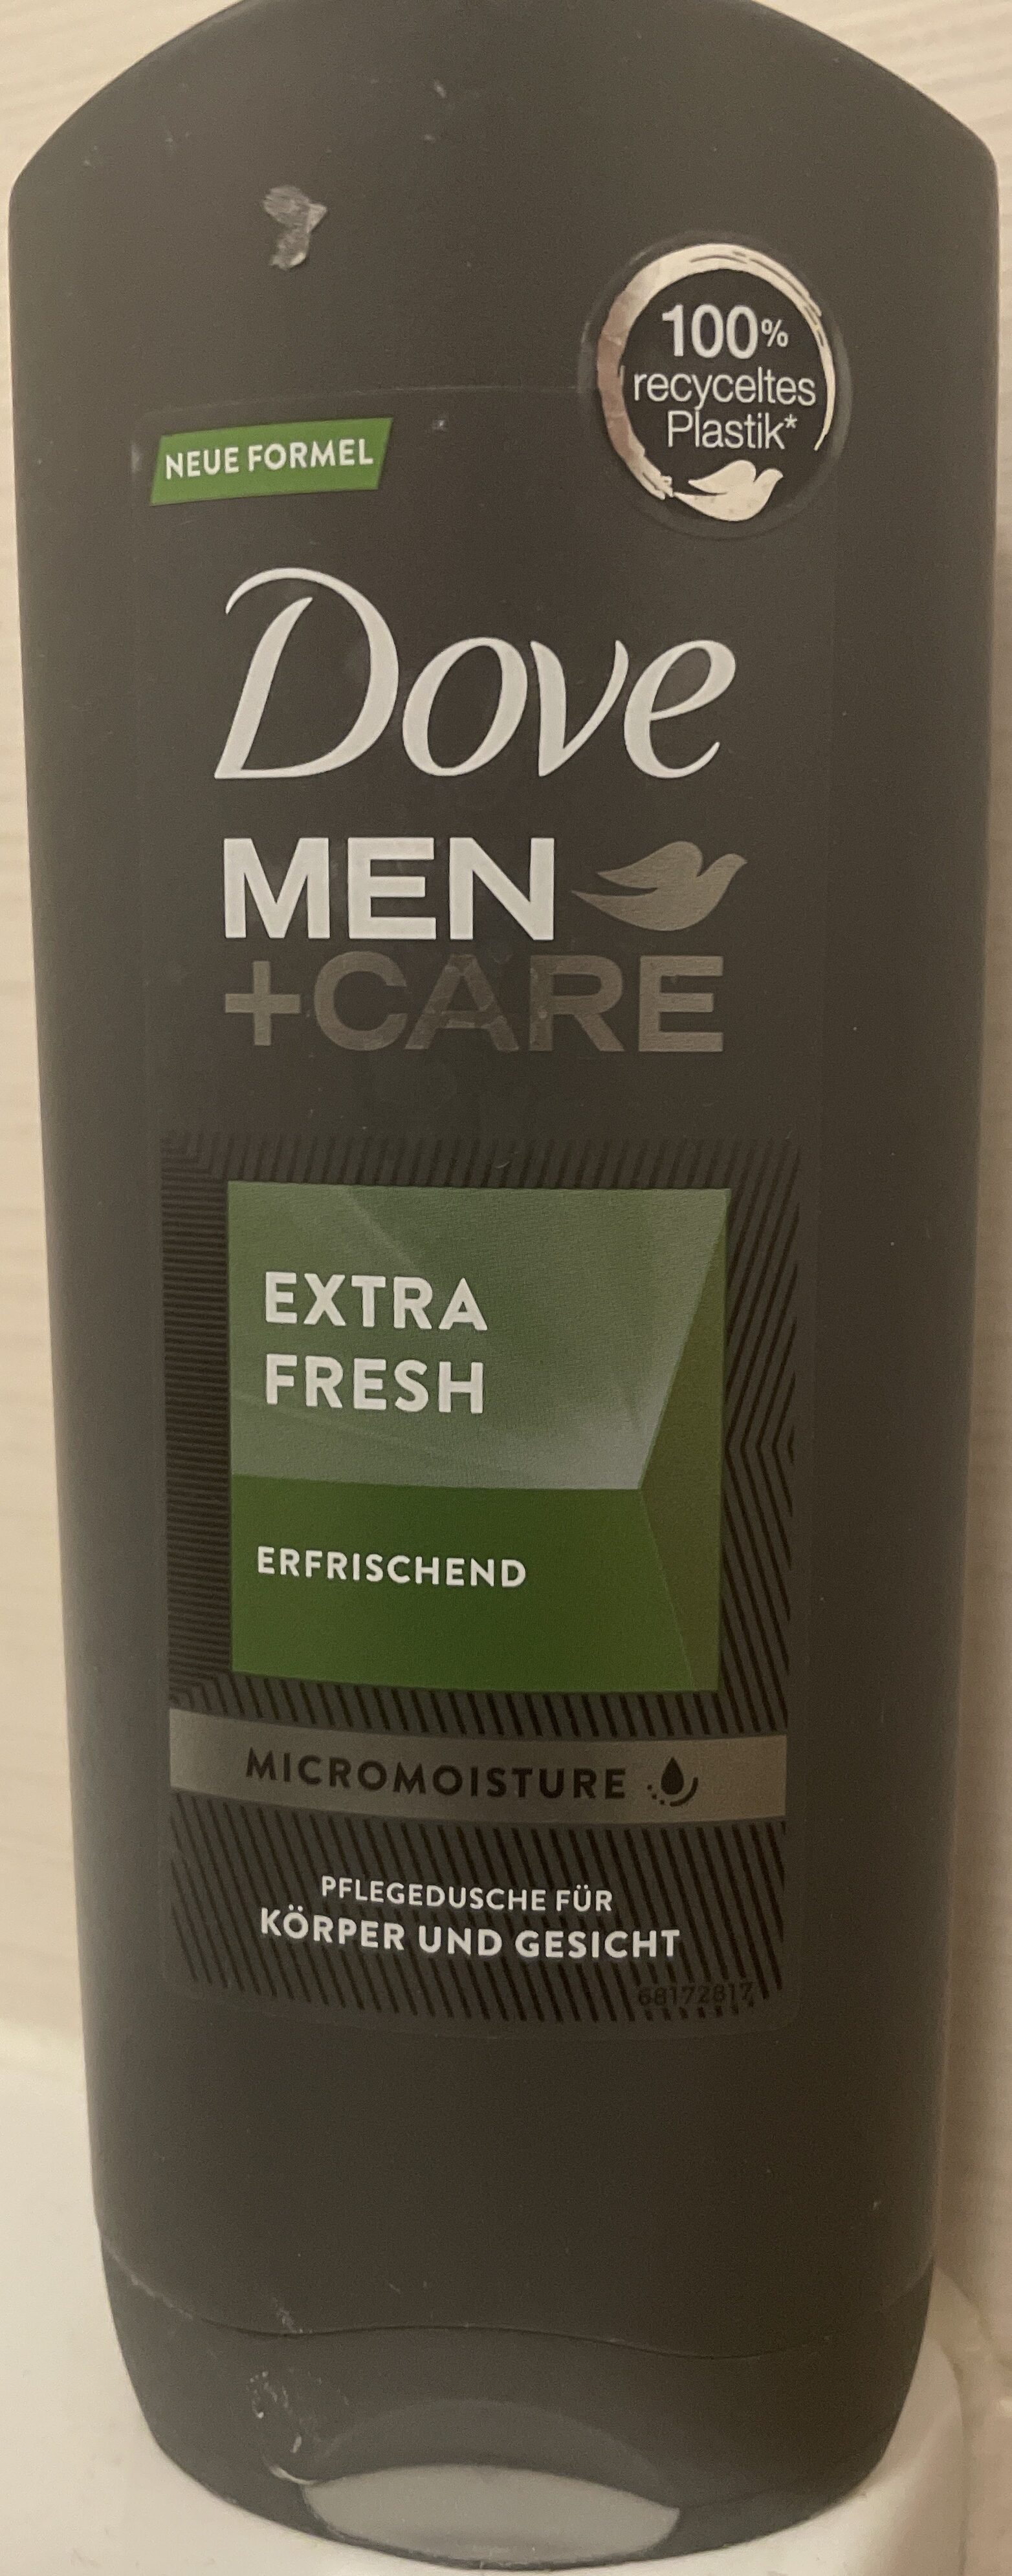 Dove Men  care Pflegedusche für Körper und Gesicht - Produkt - de